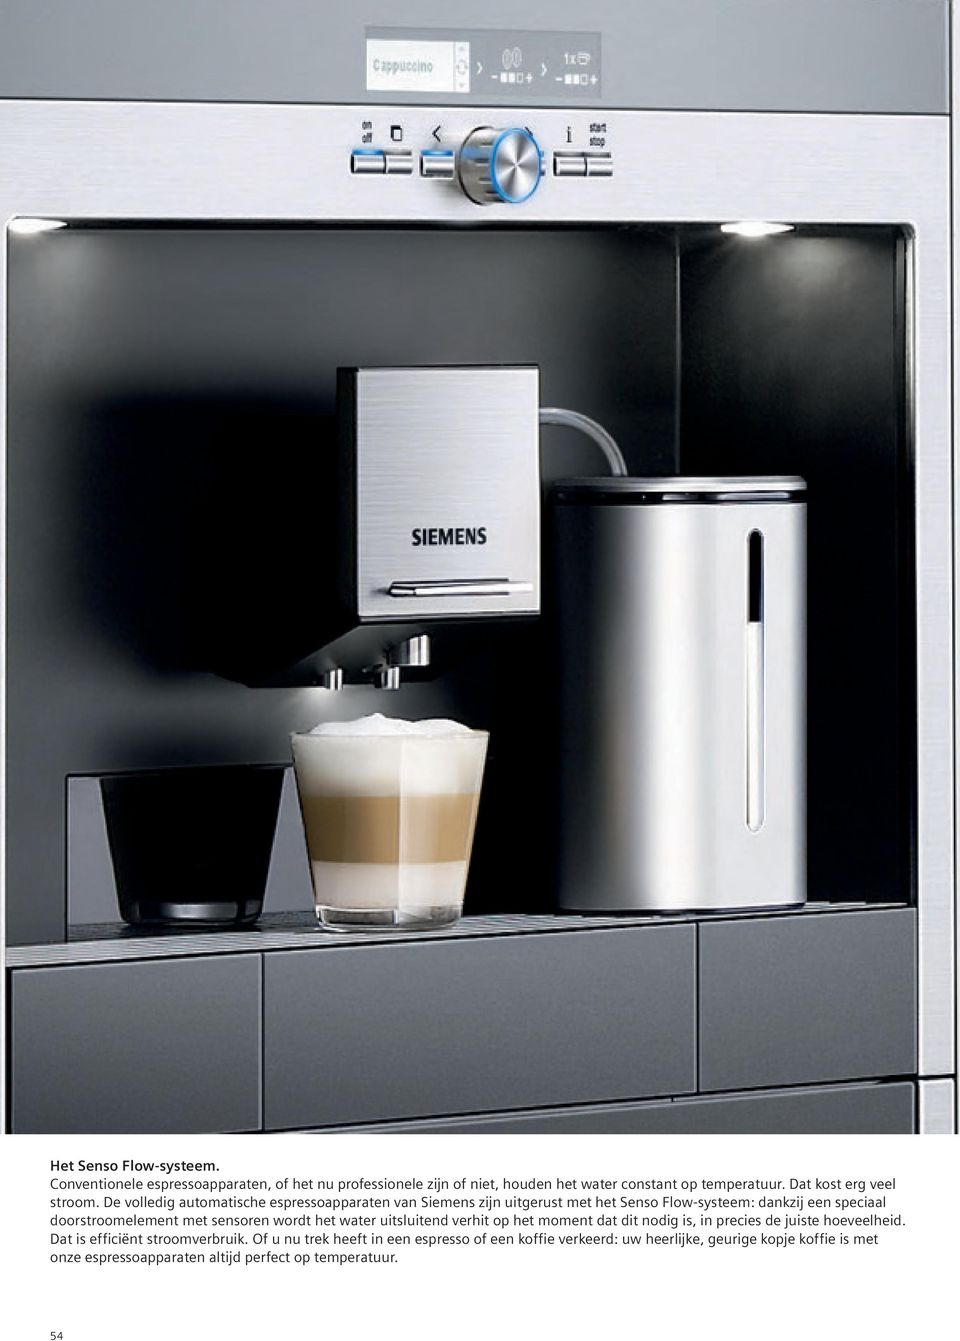 De volledig automatische espressoapparaten van Siemens zijn uitgerust met het Senso Flow-systeem: dankzij een speciaal doorstroomelement met sensoren